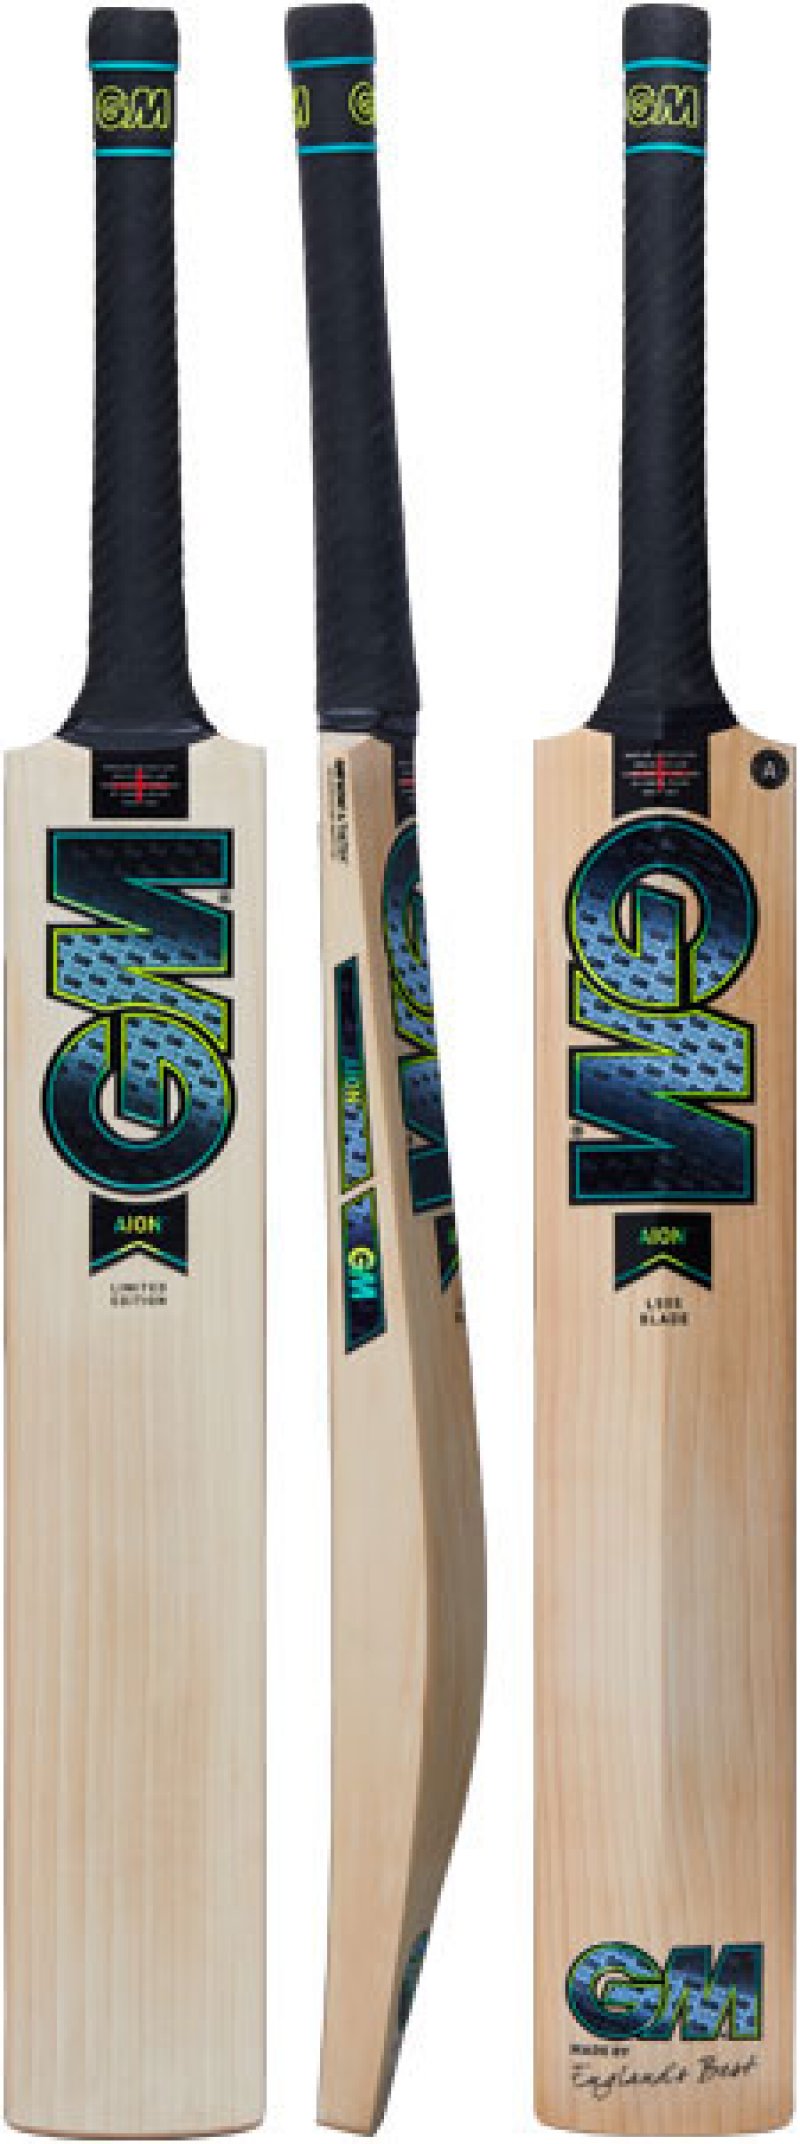 Gunn and Moore Aion DXM 404 Junior Cricket Bat